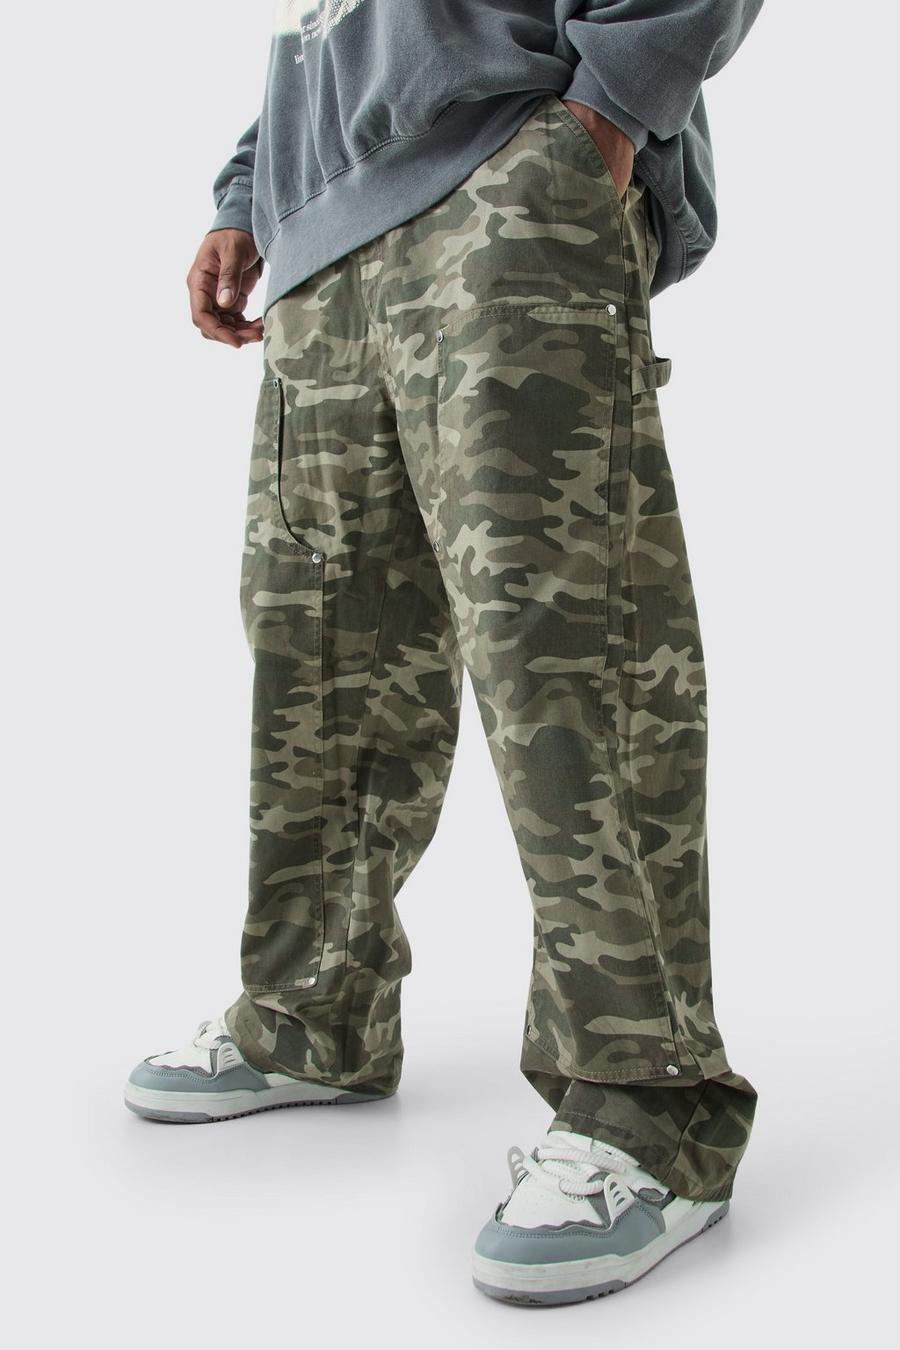 Pantaloni Carpenter rilassati Plus Size in twill in fantasia militare con vita fissa, Multi